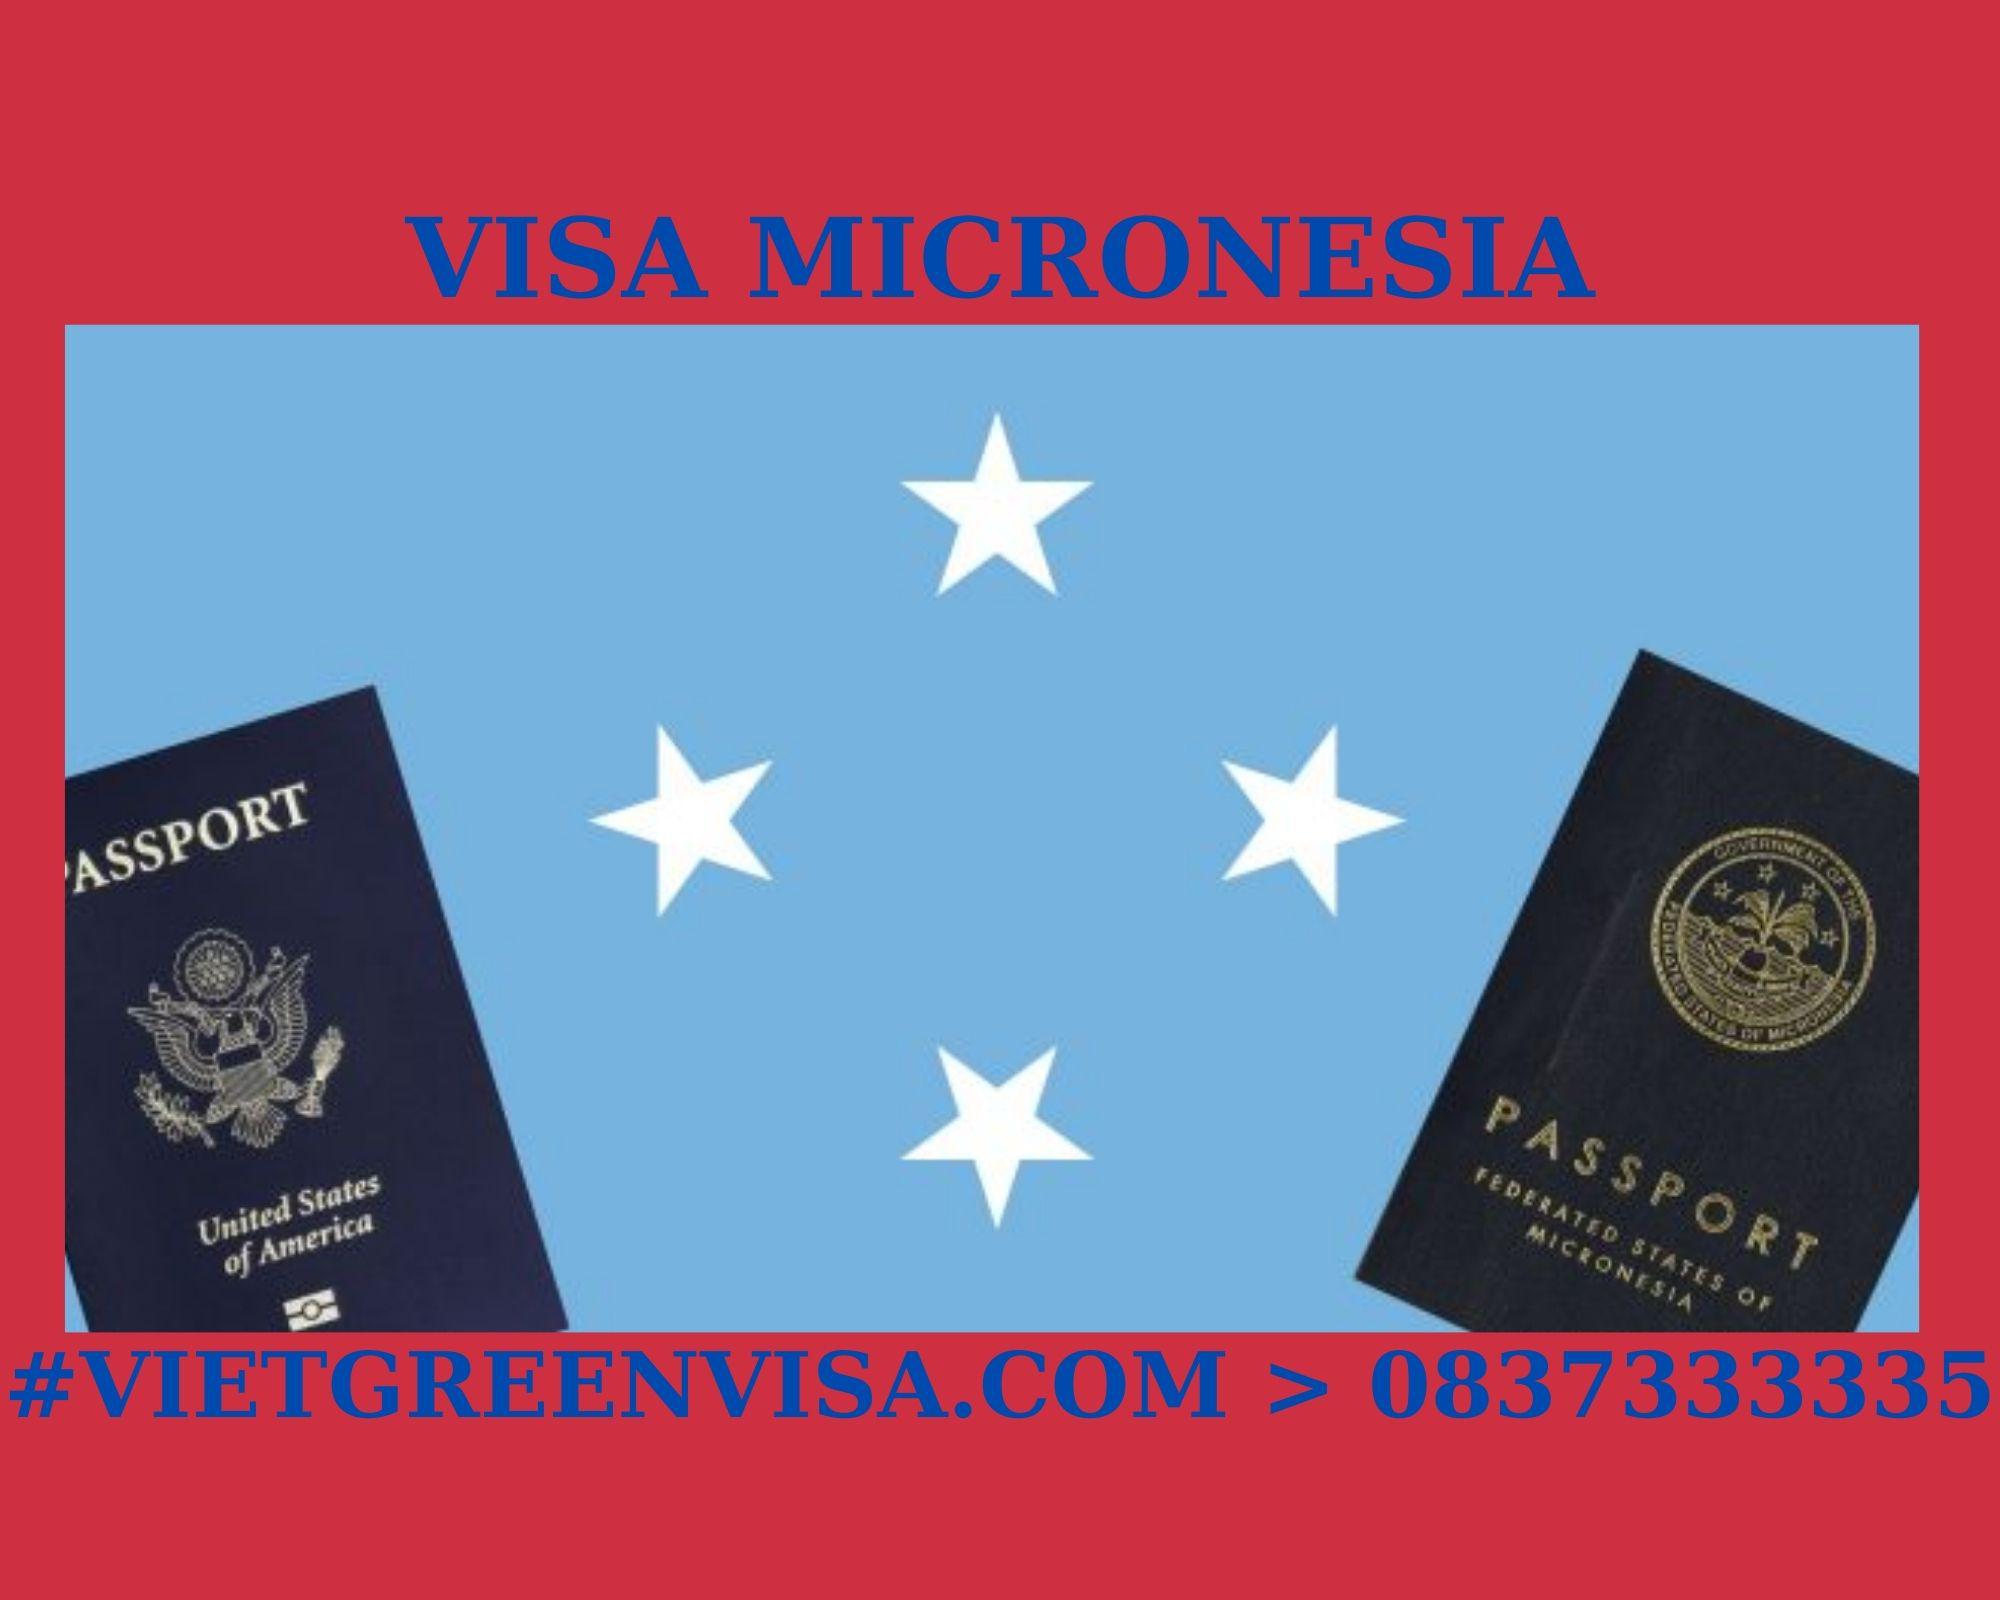 Dịch vụ xin Visa du lịch Micronesia uy tín, trọn gói